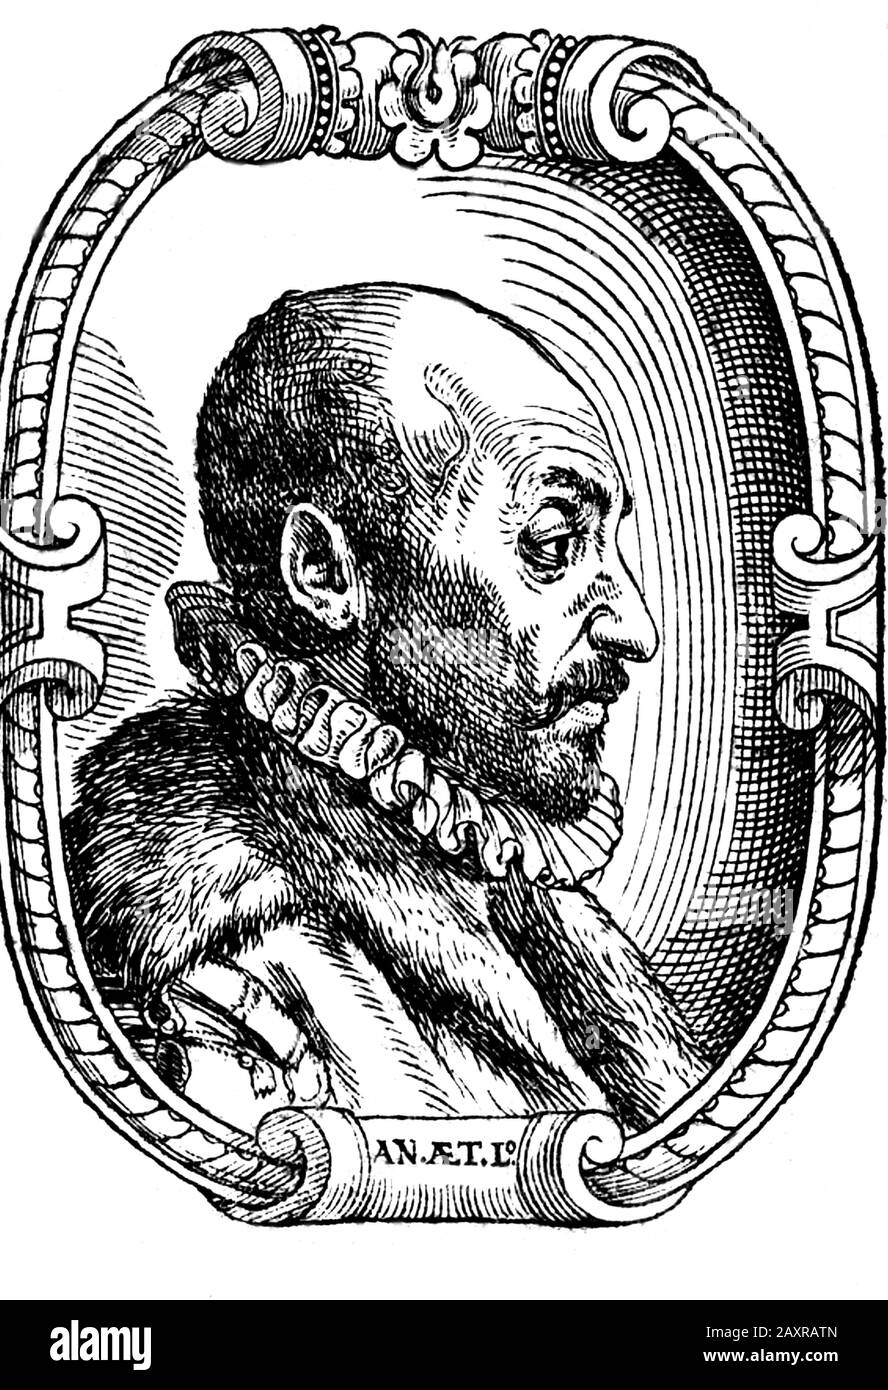 1600 ca , ITALY : The celebrated italian philosopher , polymath , occultist , dramatist and alchemist GIOVANNI BATTISTA DELLA PORTA ( Vico Equense , 1535 ca - Napoli,  1615 ). Engraved portrait from XVII century. - FILOSOFO - FILOSOFIA - ALCHEMY - ALCHIMIA - ALCHIMISTA - PHILOSOPHY - TEATRO - THEATRE - commediografo - drammaturgo - playwrighter - Giambattista - Giovambattista - MATEMATICO - MATEMATICA - METEOROLOGIA - METEOROLOGO - METEOROLOGY - ASTROLOGO - ASTROLOGIA - ASTROLOGIST - ASTROLOGY - OCCULTO - OCCULTISTA - OCCULT - gorgiera -  collar - colletto - incisione - engraving - illustratio Stock Photo